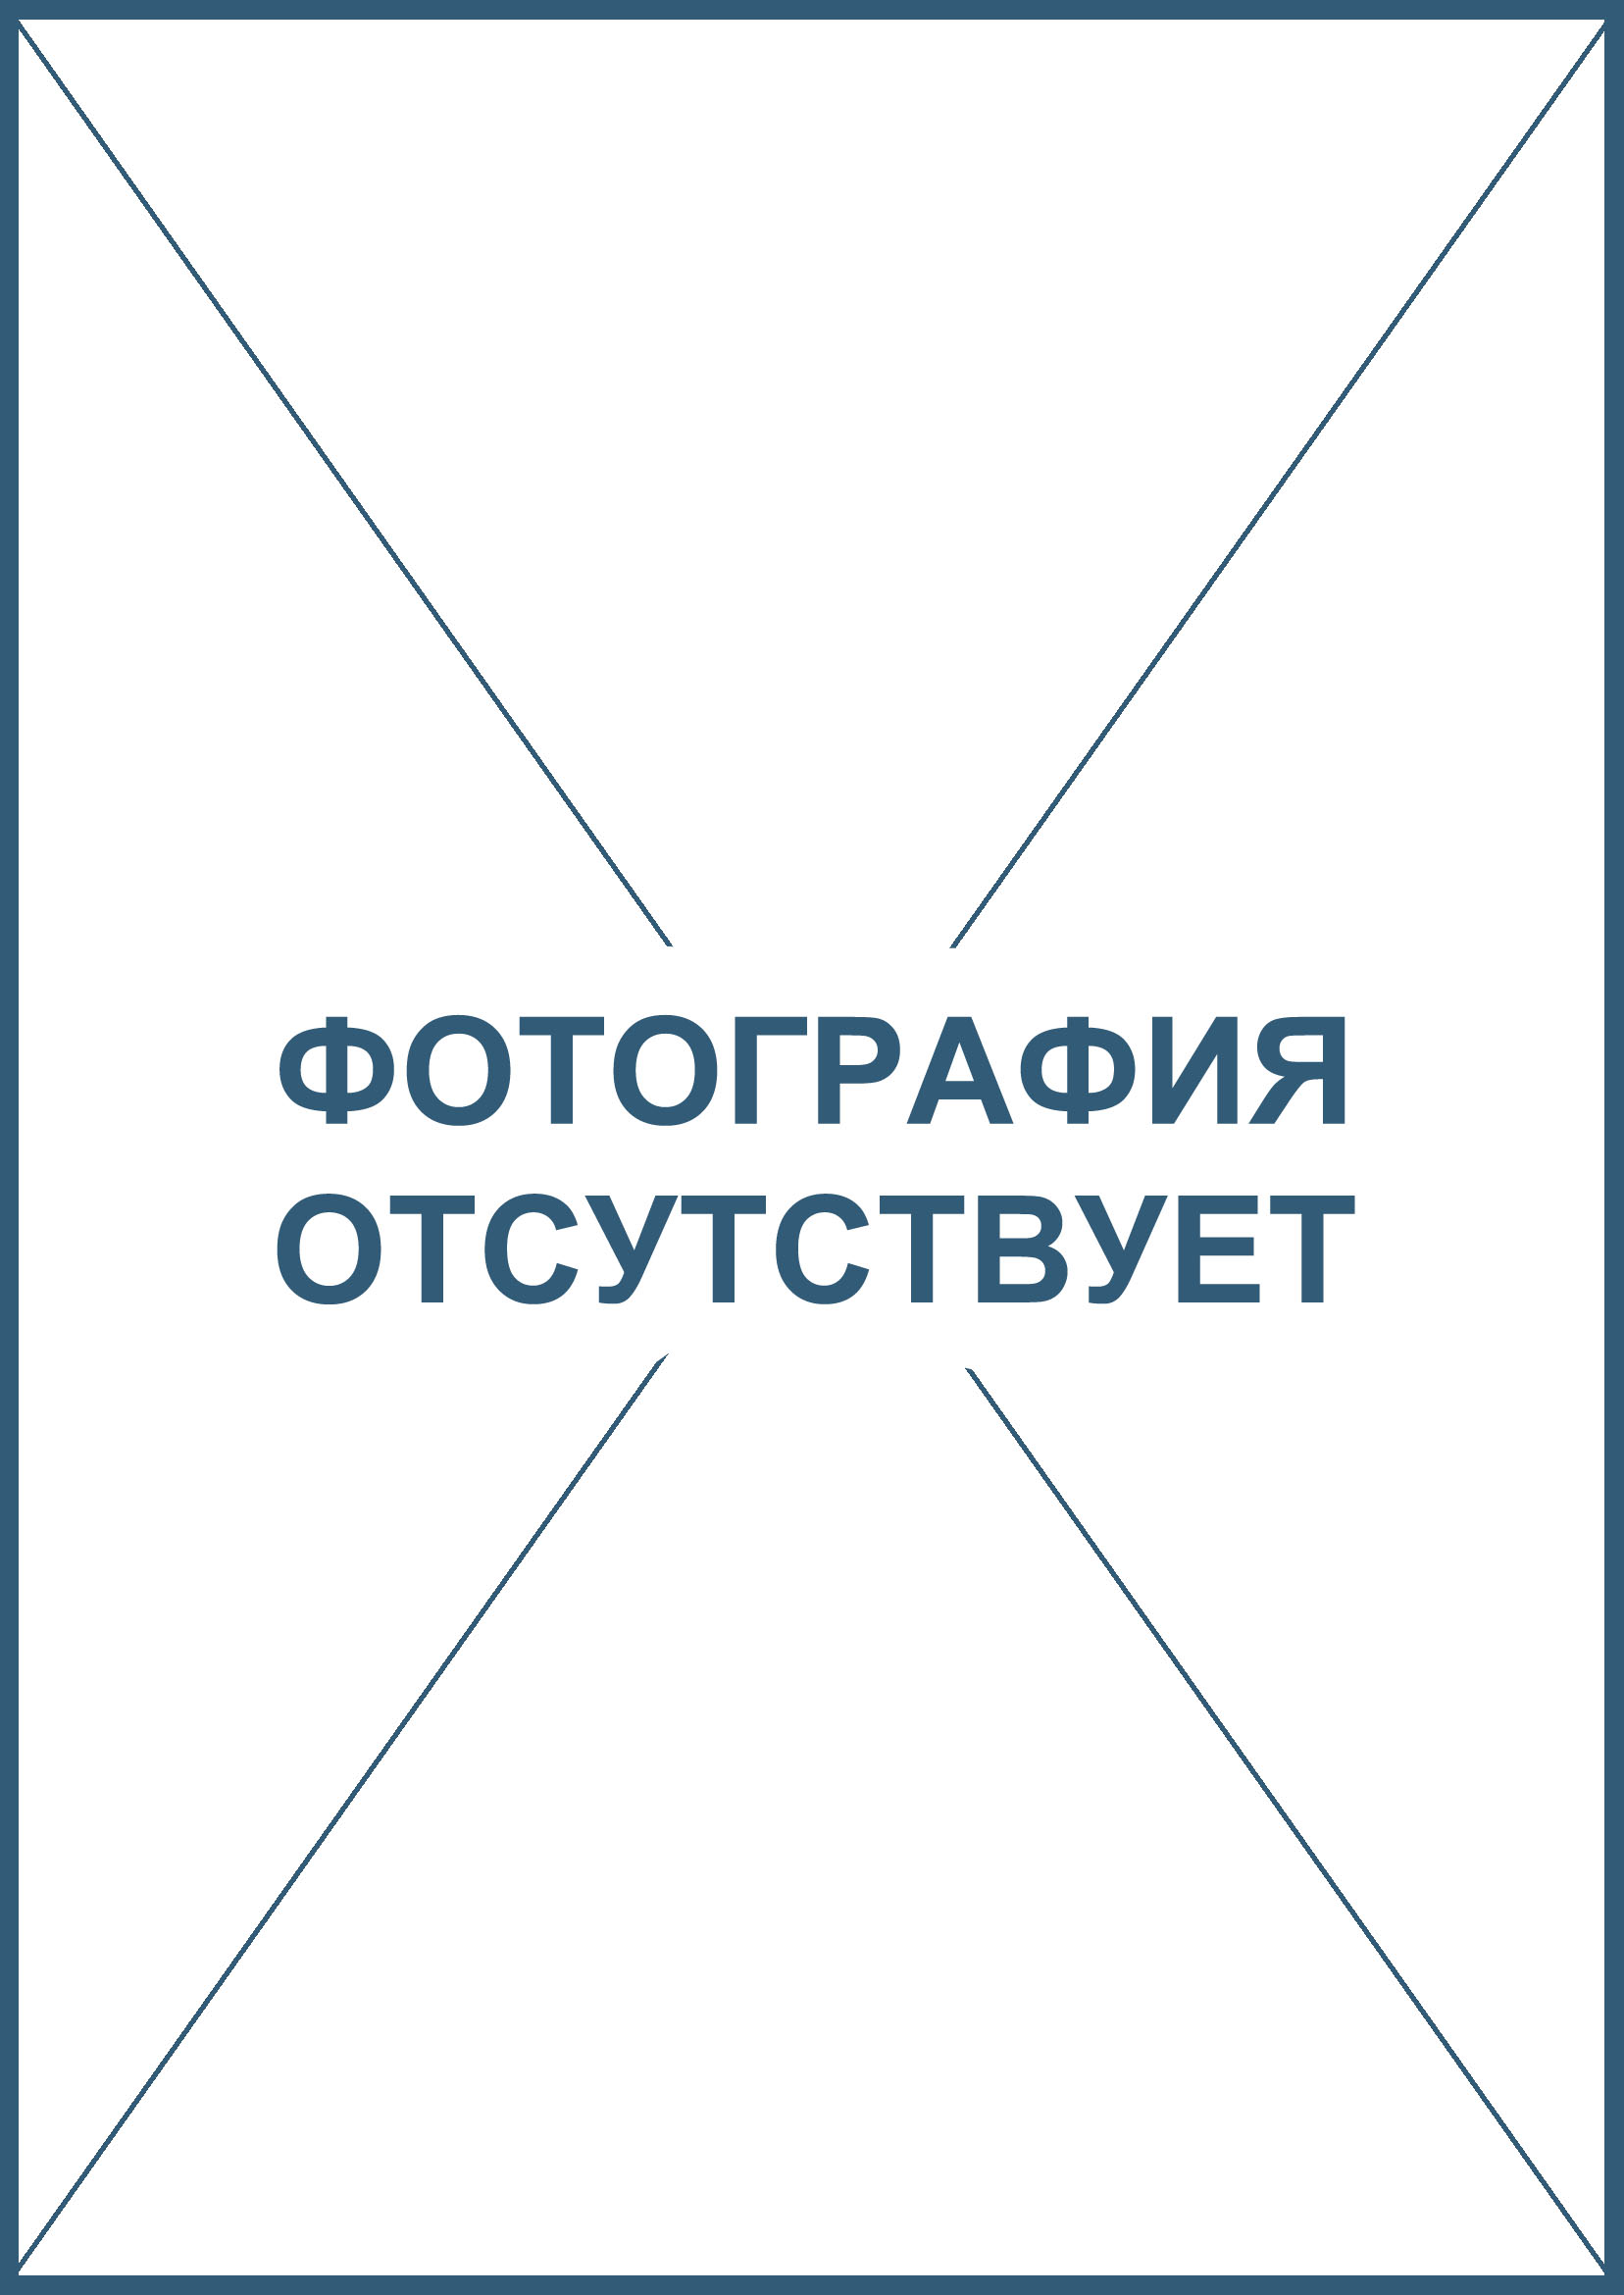 Сертификация продуктов и товаров легкой промышленности в Москве, обязательная экспертиза, сертификат, декларация